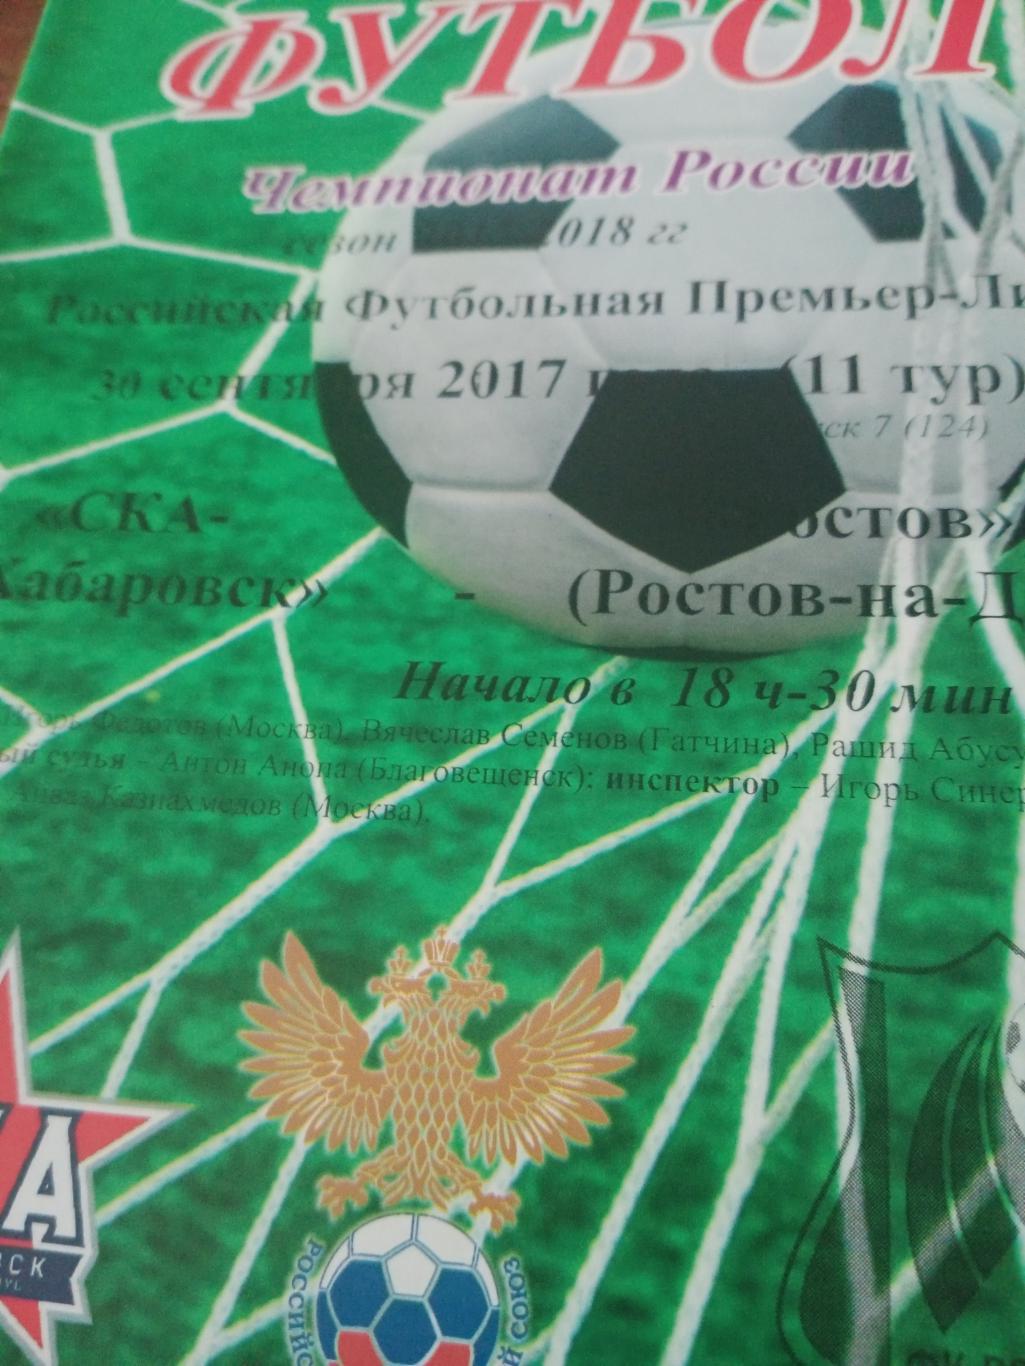 СКА Хабаровск - ФК Ростов.30 сентября 2017 год